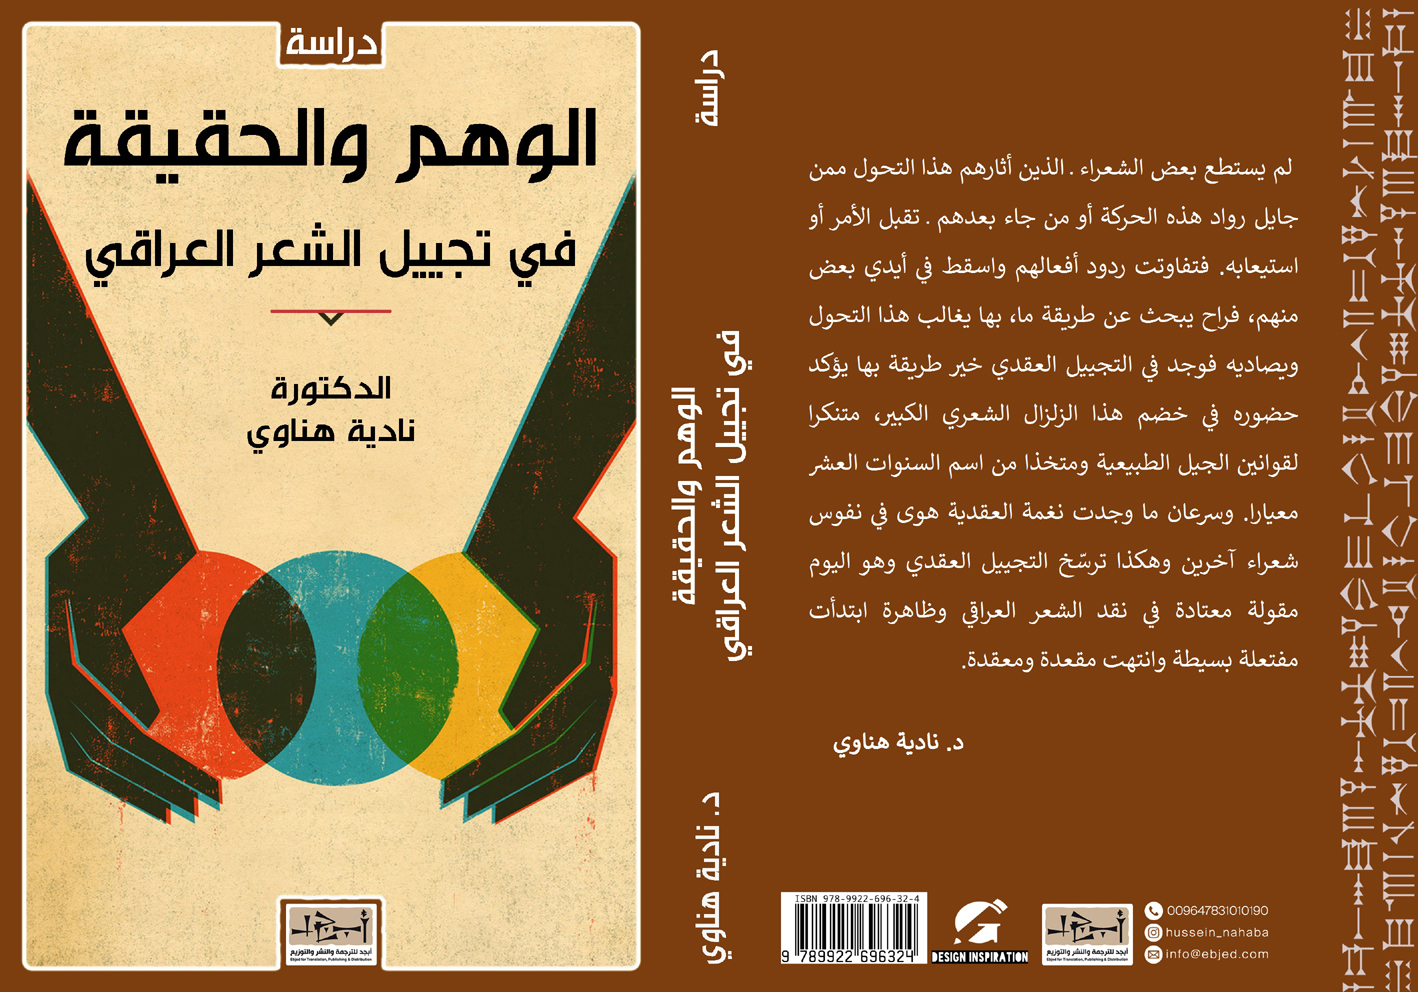 الوهم والحقيقة في تجييل الشعر العراقي  -  د. نادية هناوي